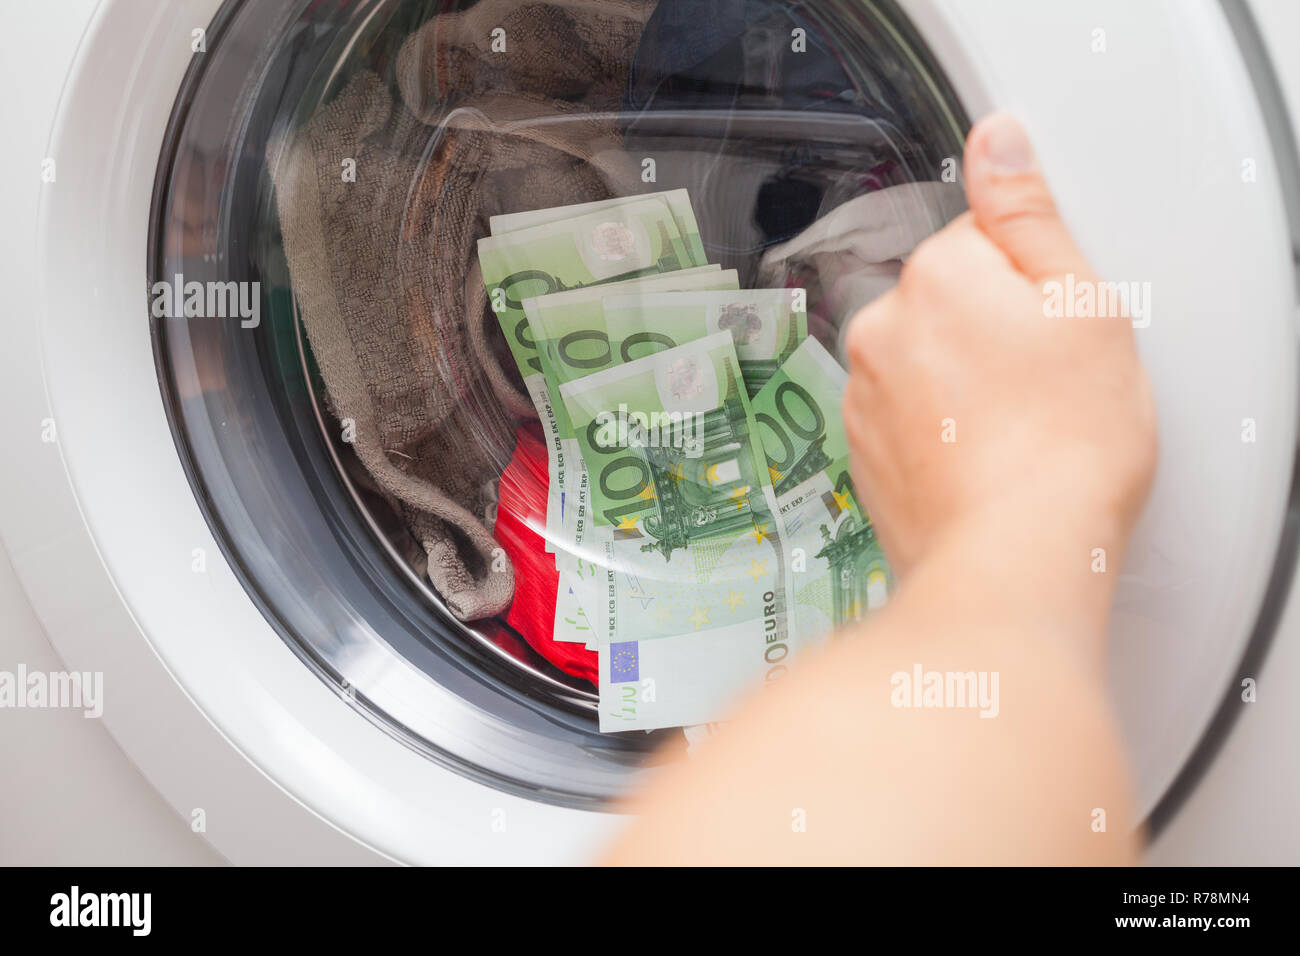 Beaucoup d'argent bloqué dans la machine à laver, l'homme essayant d'ouvrir  la porte Photo Stock - Alamy